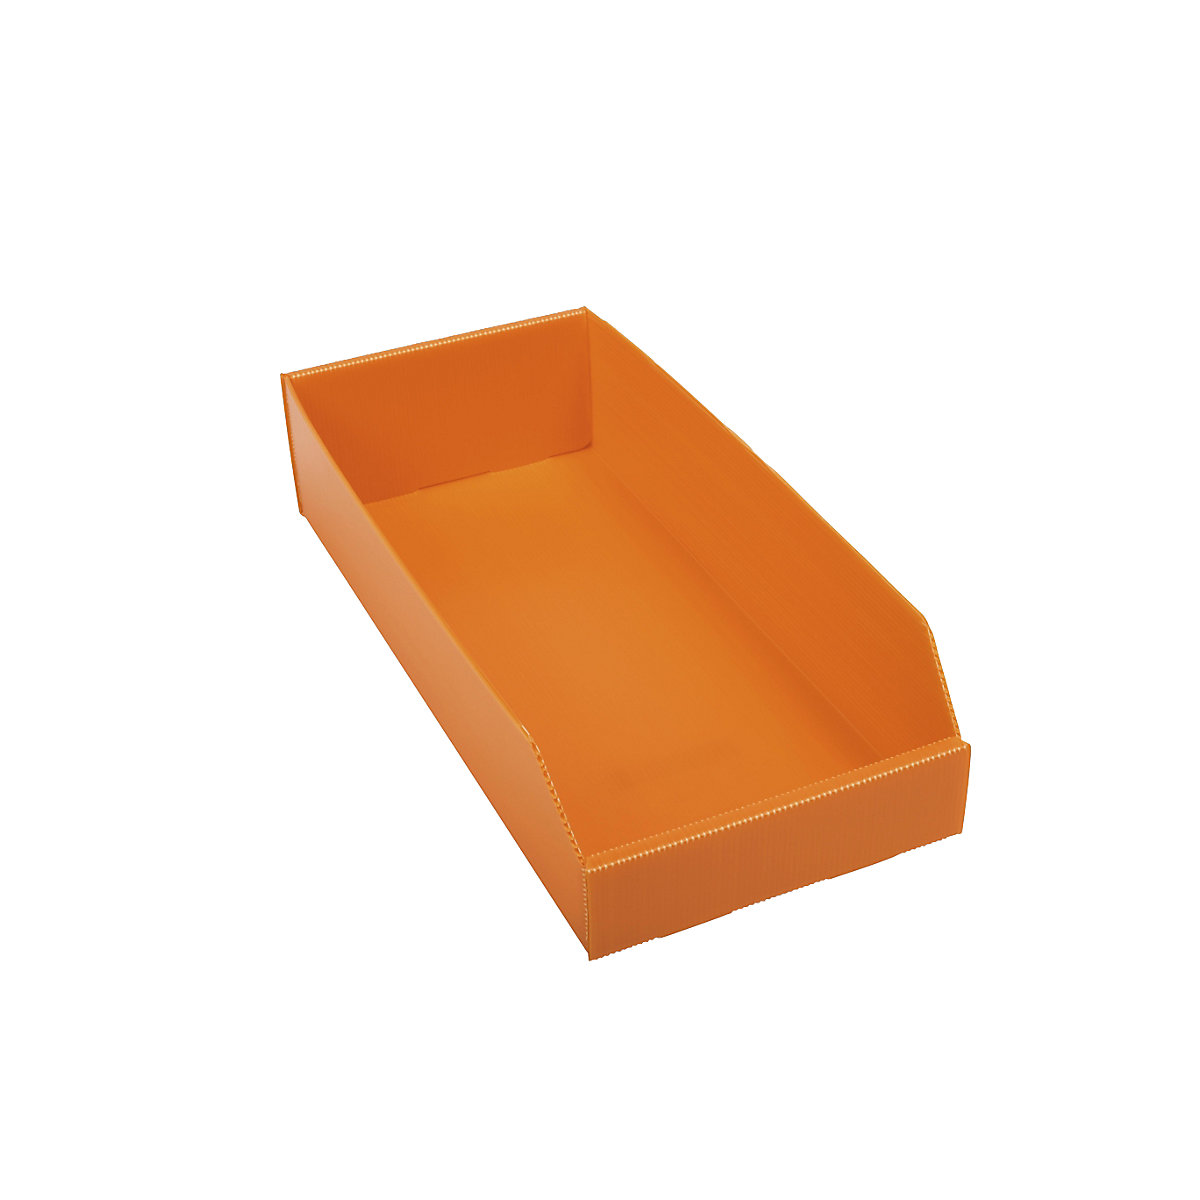 Caixa de plástico para estante, dobrável, CxLxA 450 x 200 x 100 mm, laranja, embalagem com 25 unidades-5